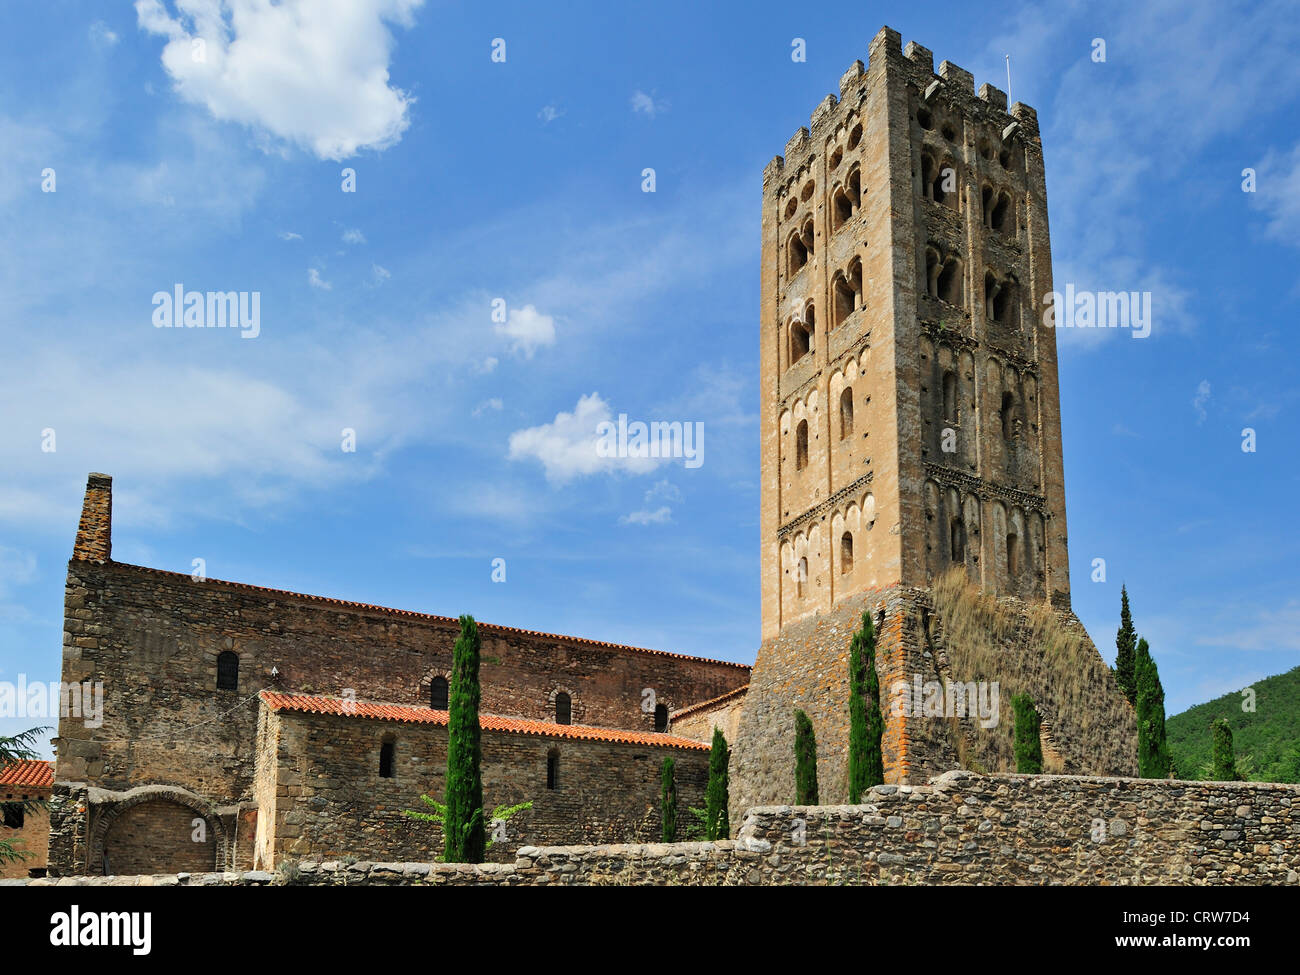 Die Abtei Saint-Michel-de-Cuxa / Sant Miquel de Cuixà, einer Benediktiner-Abtei in Codalet, Pyrénées-Orientales, Pyrenäen, Frankreich Stockfoto